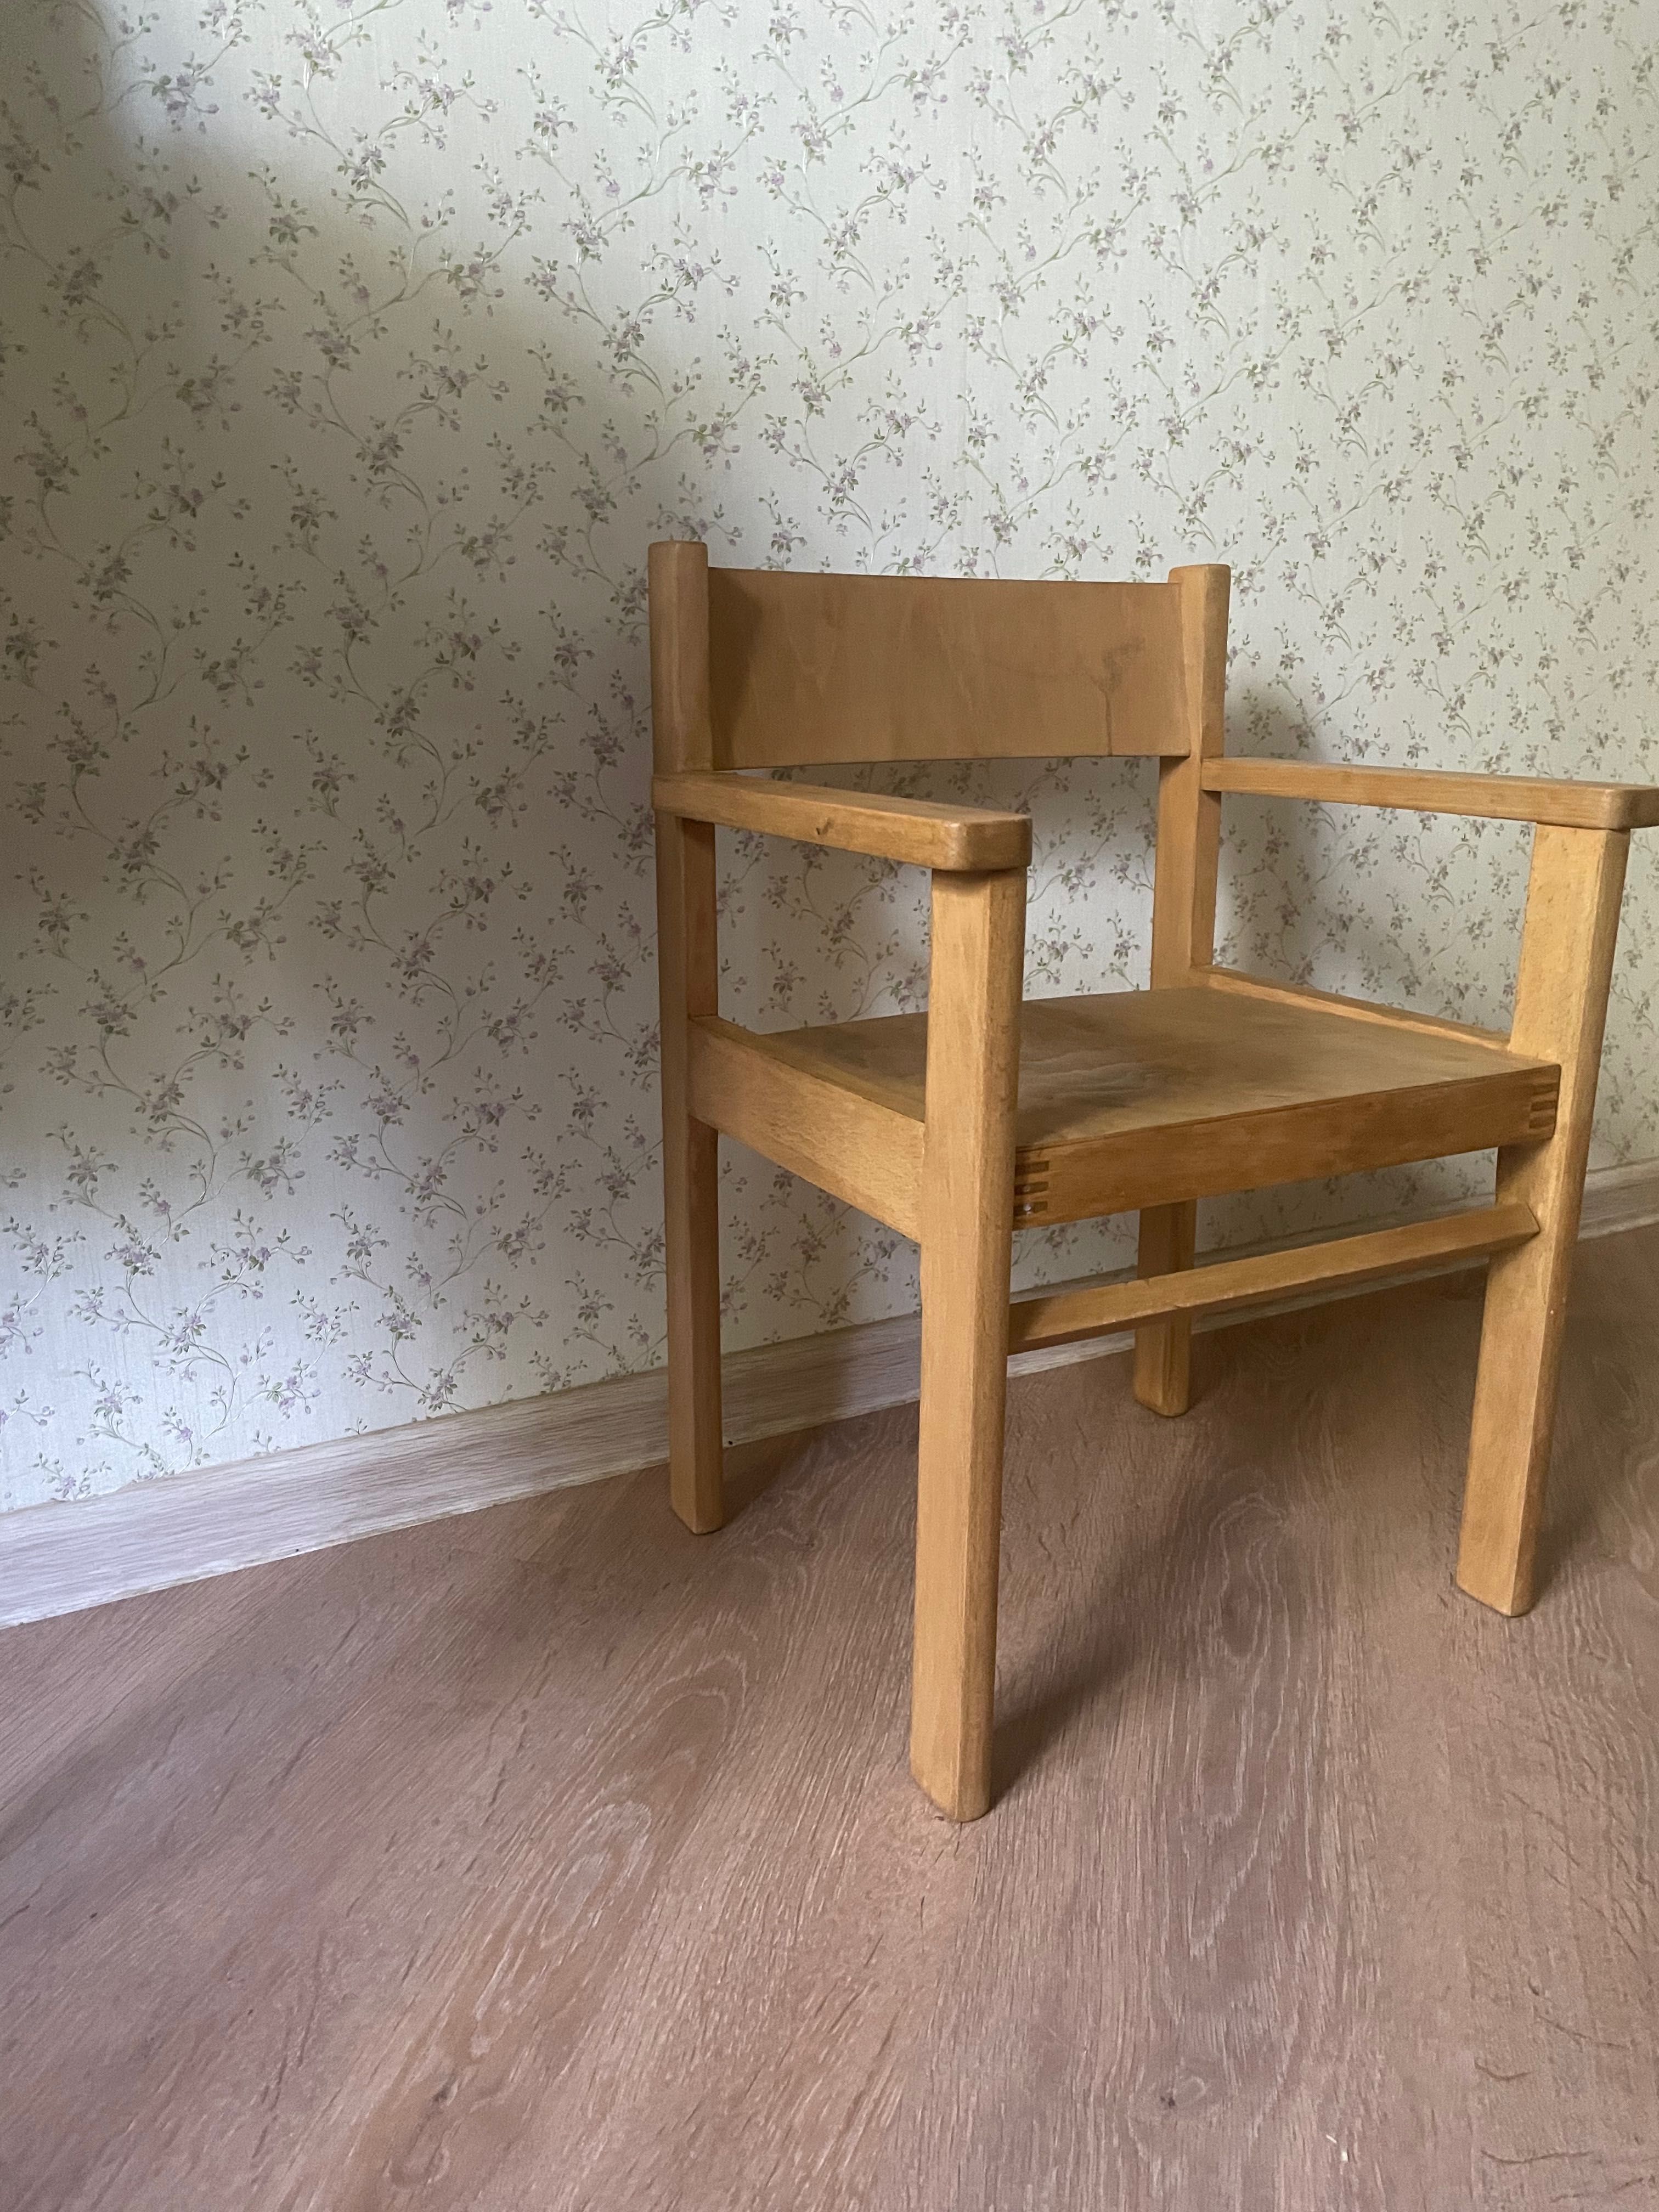 Продам детский советский стульчик